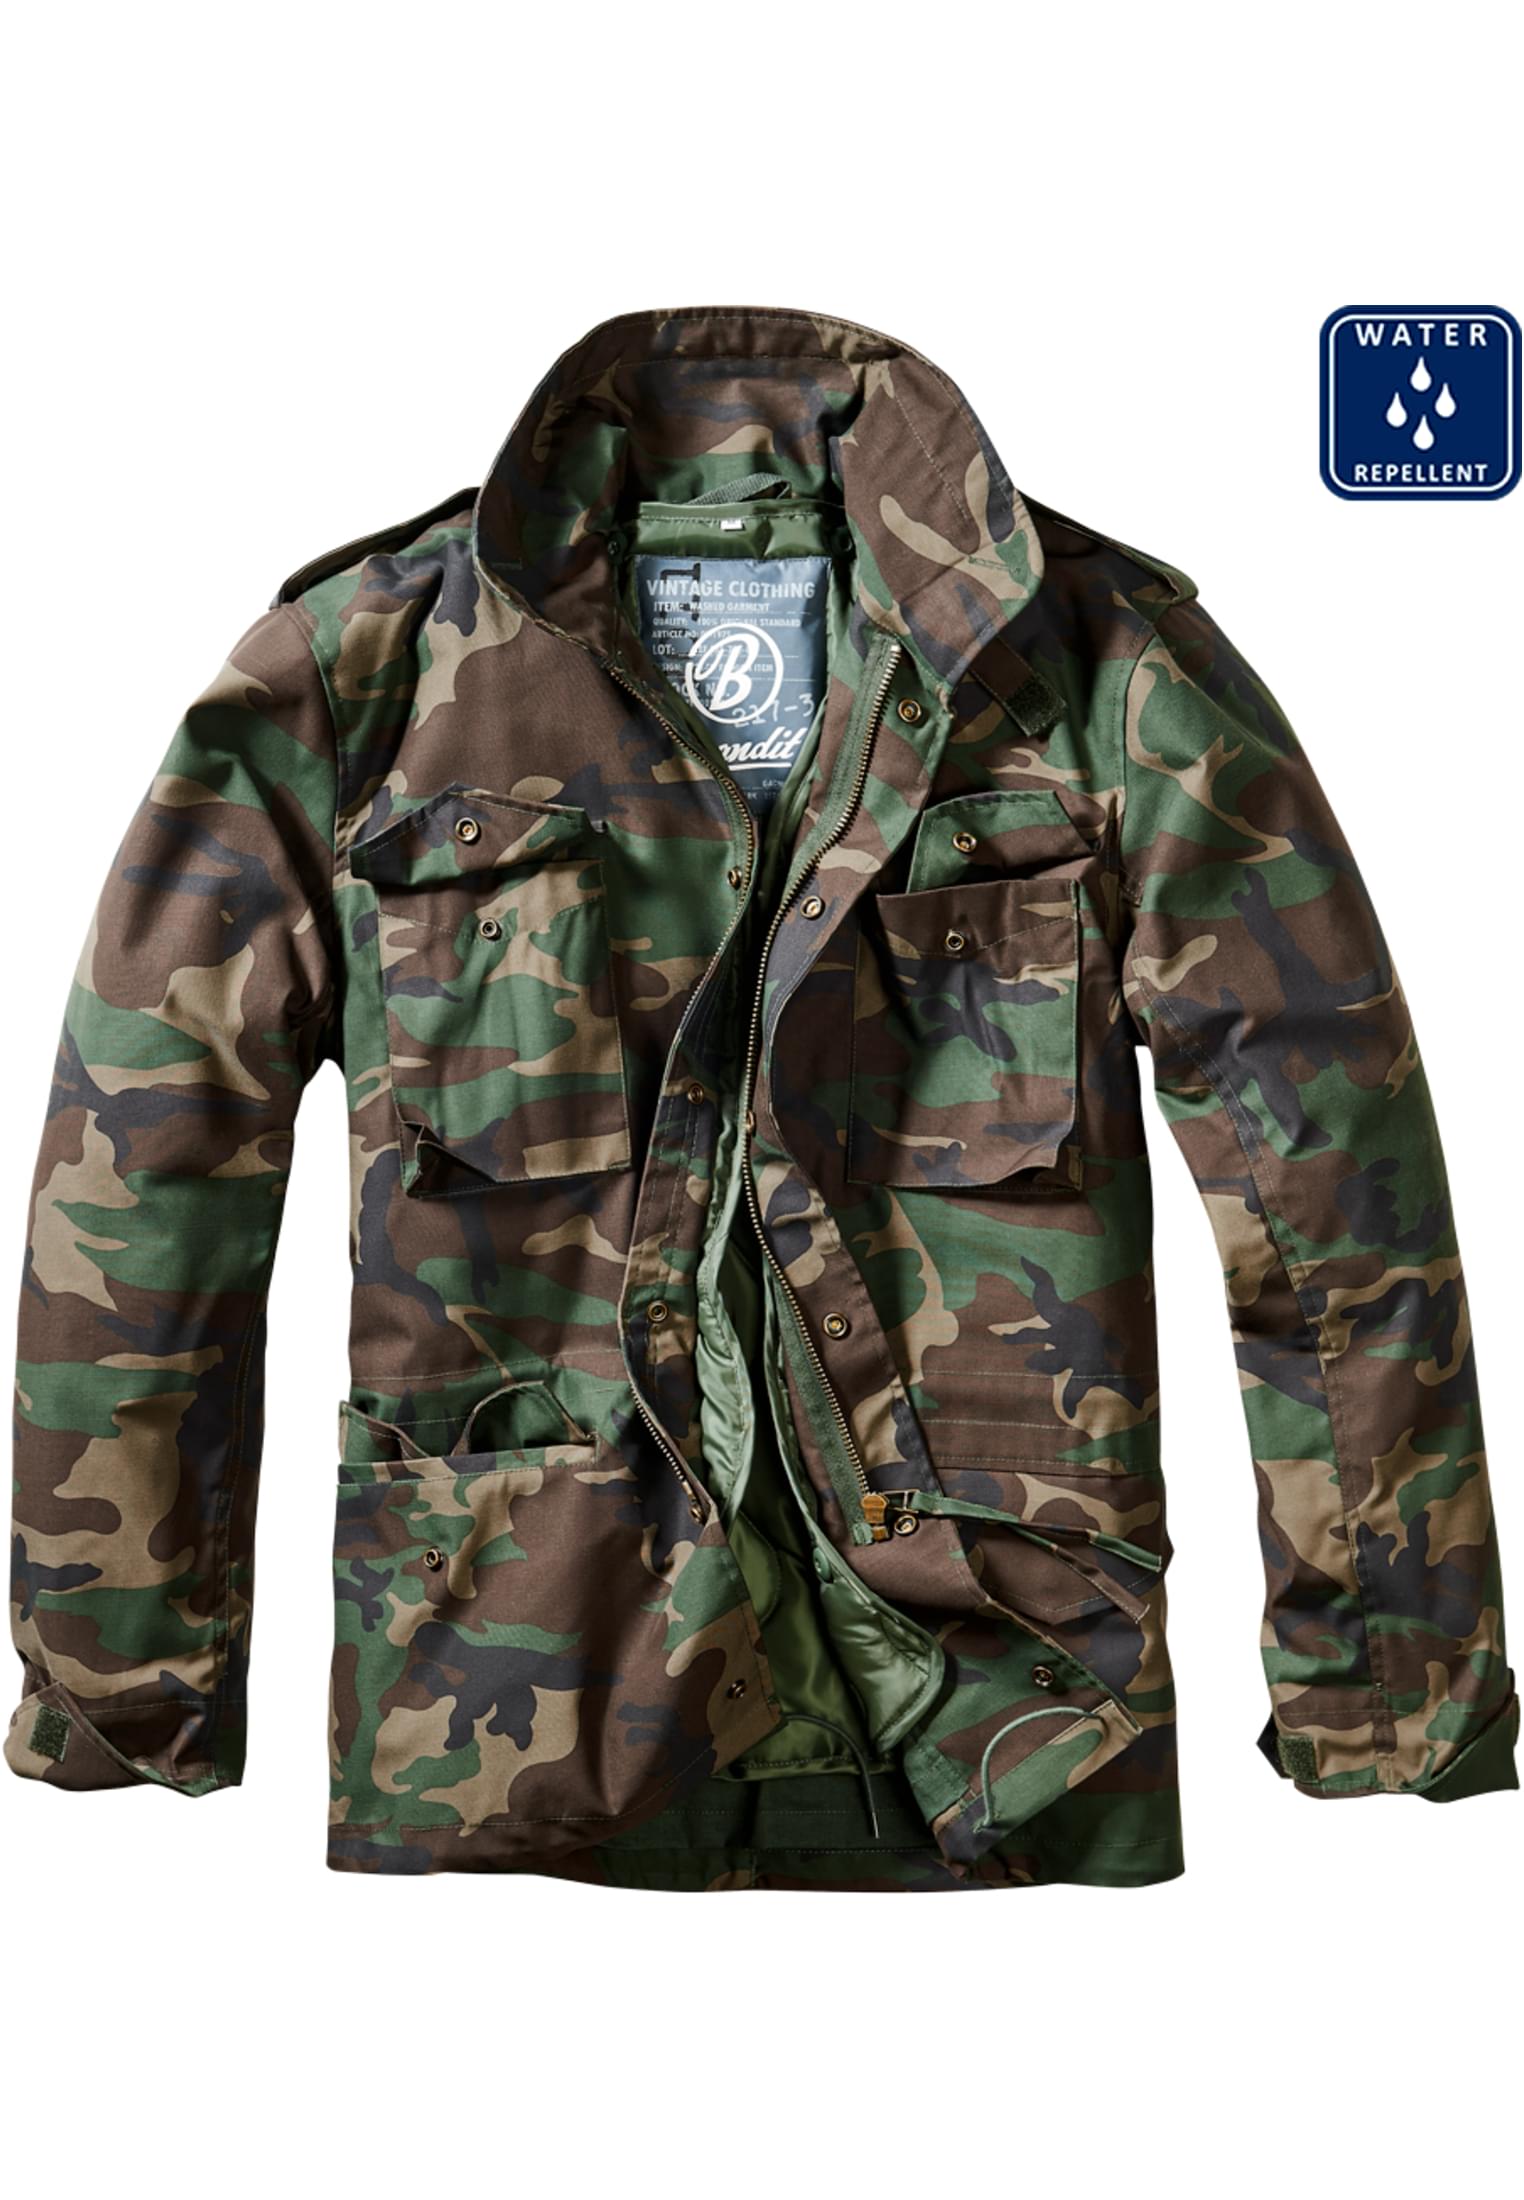 Jacken M-65 Field Jacket in Farbe olive camo